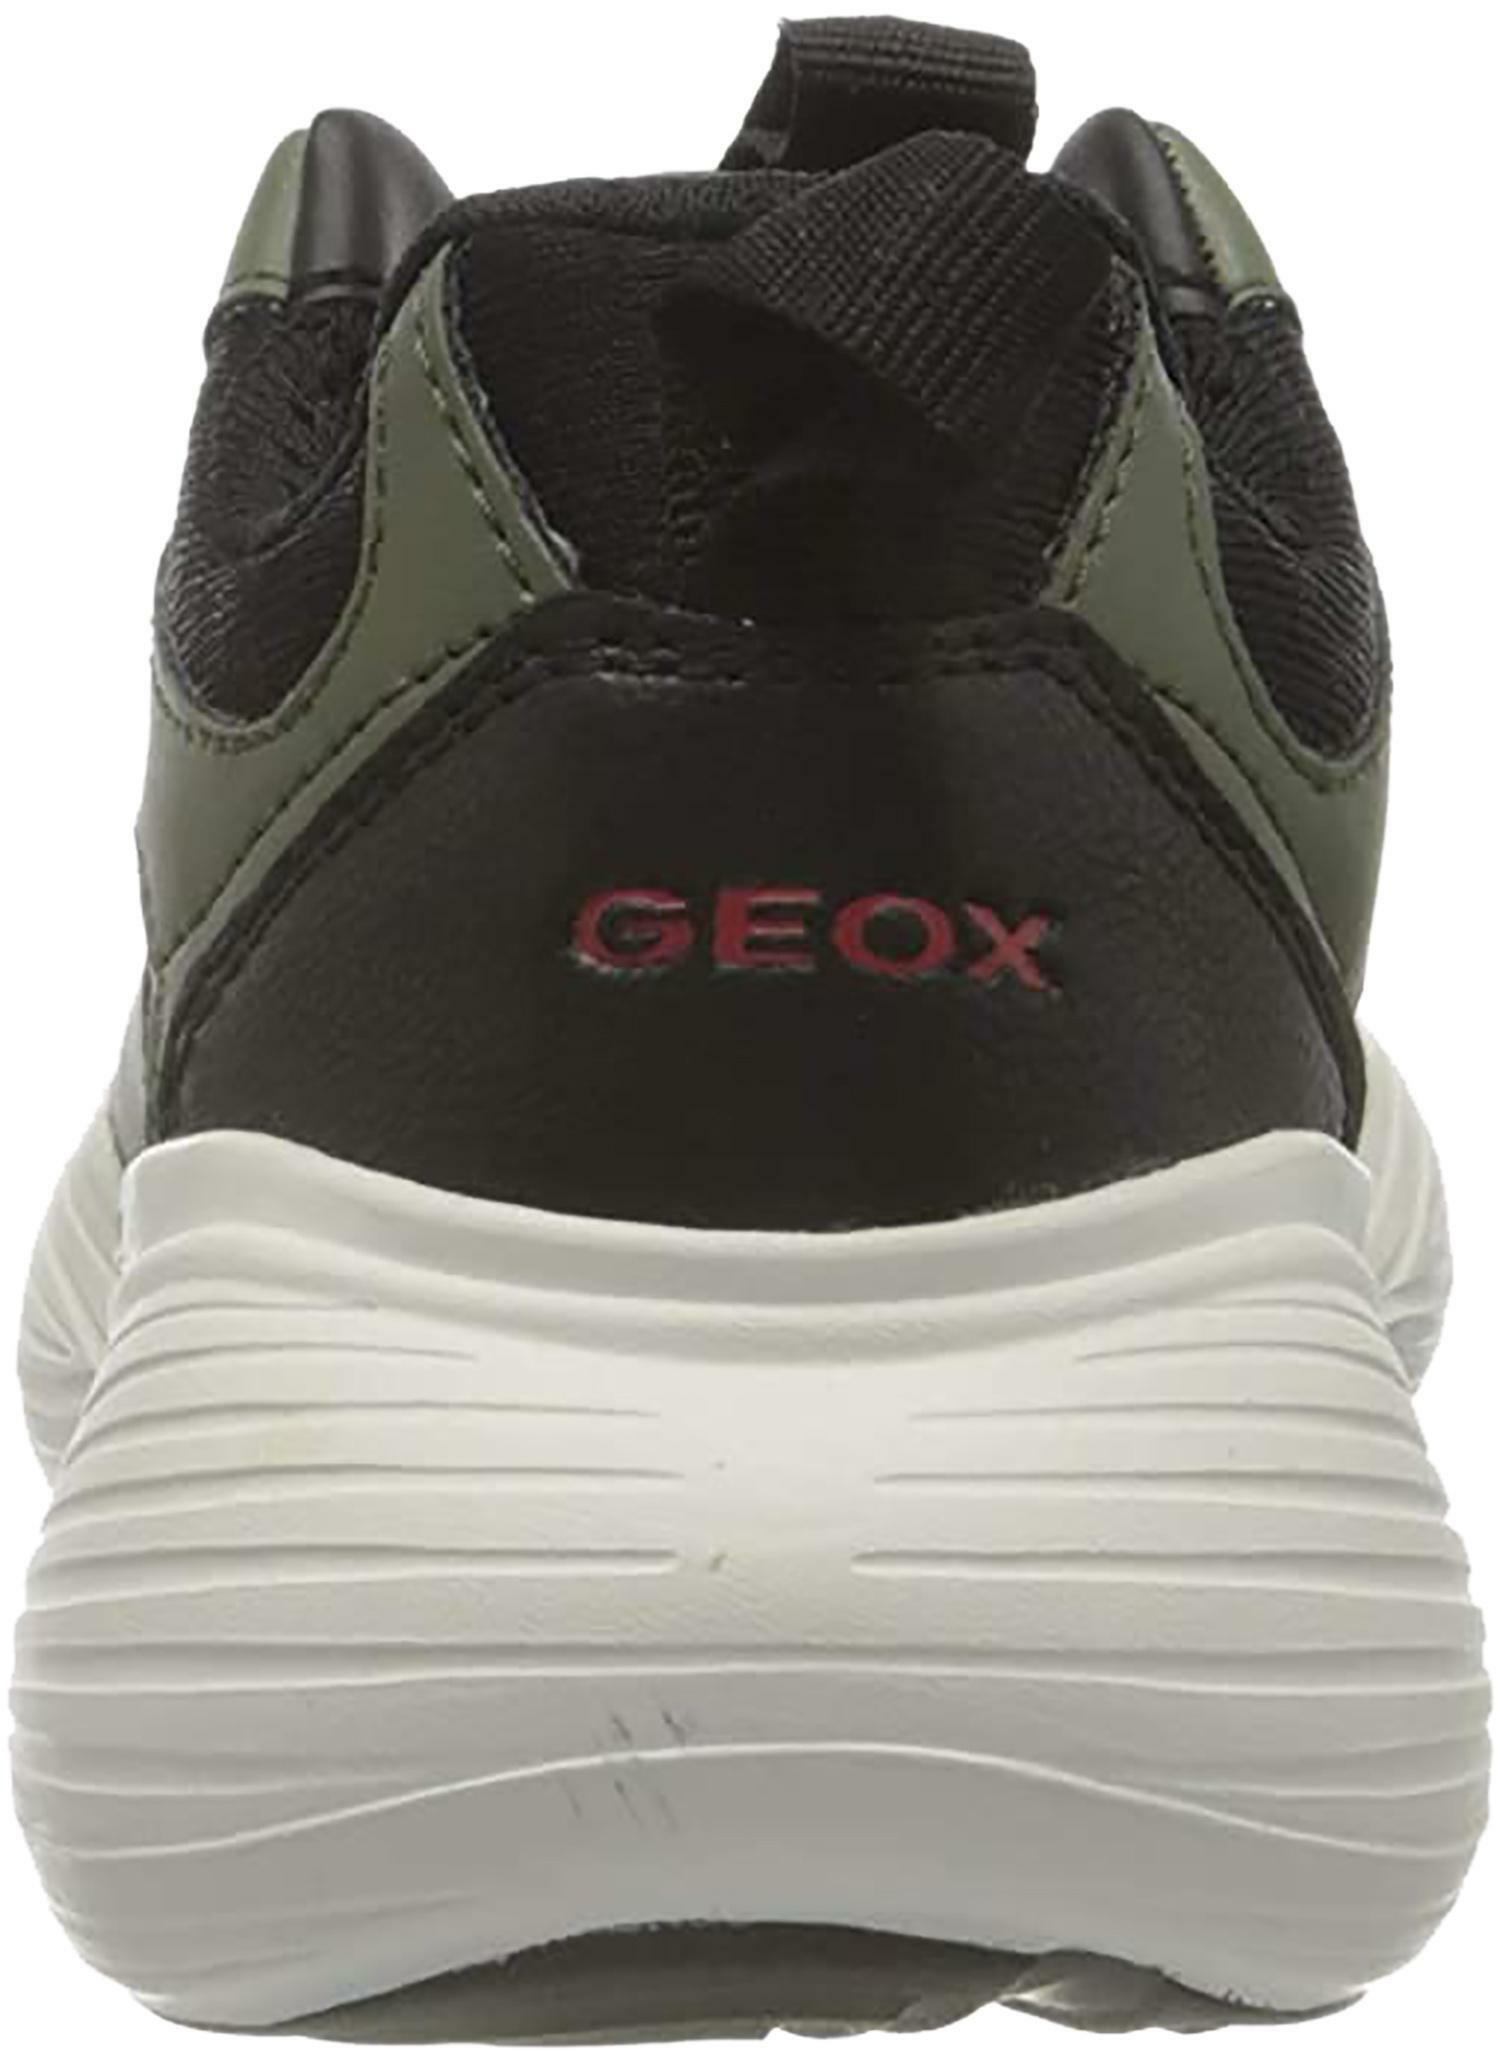 geox geox j bubblex b scarpe sportive bambino verdi j04deac0498